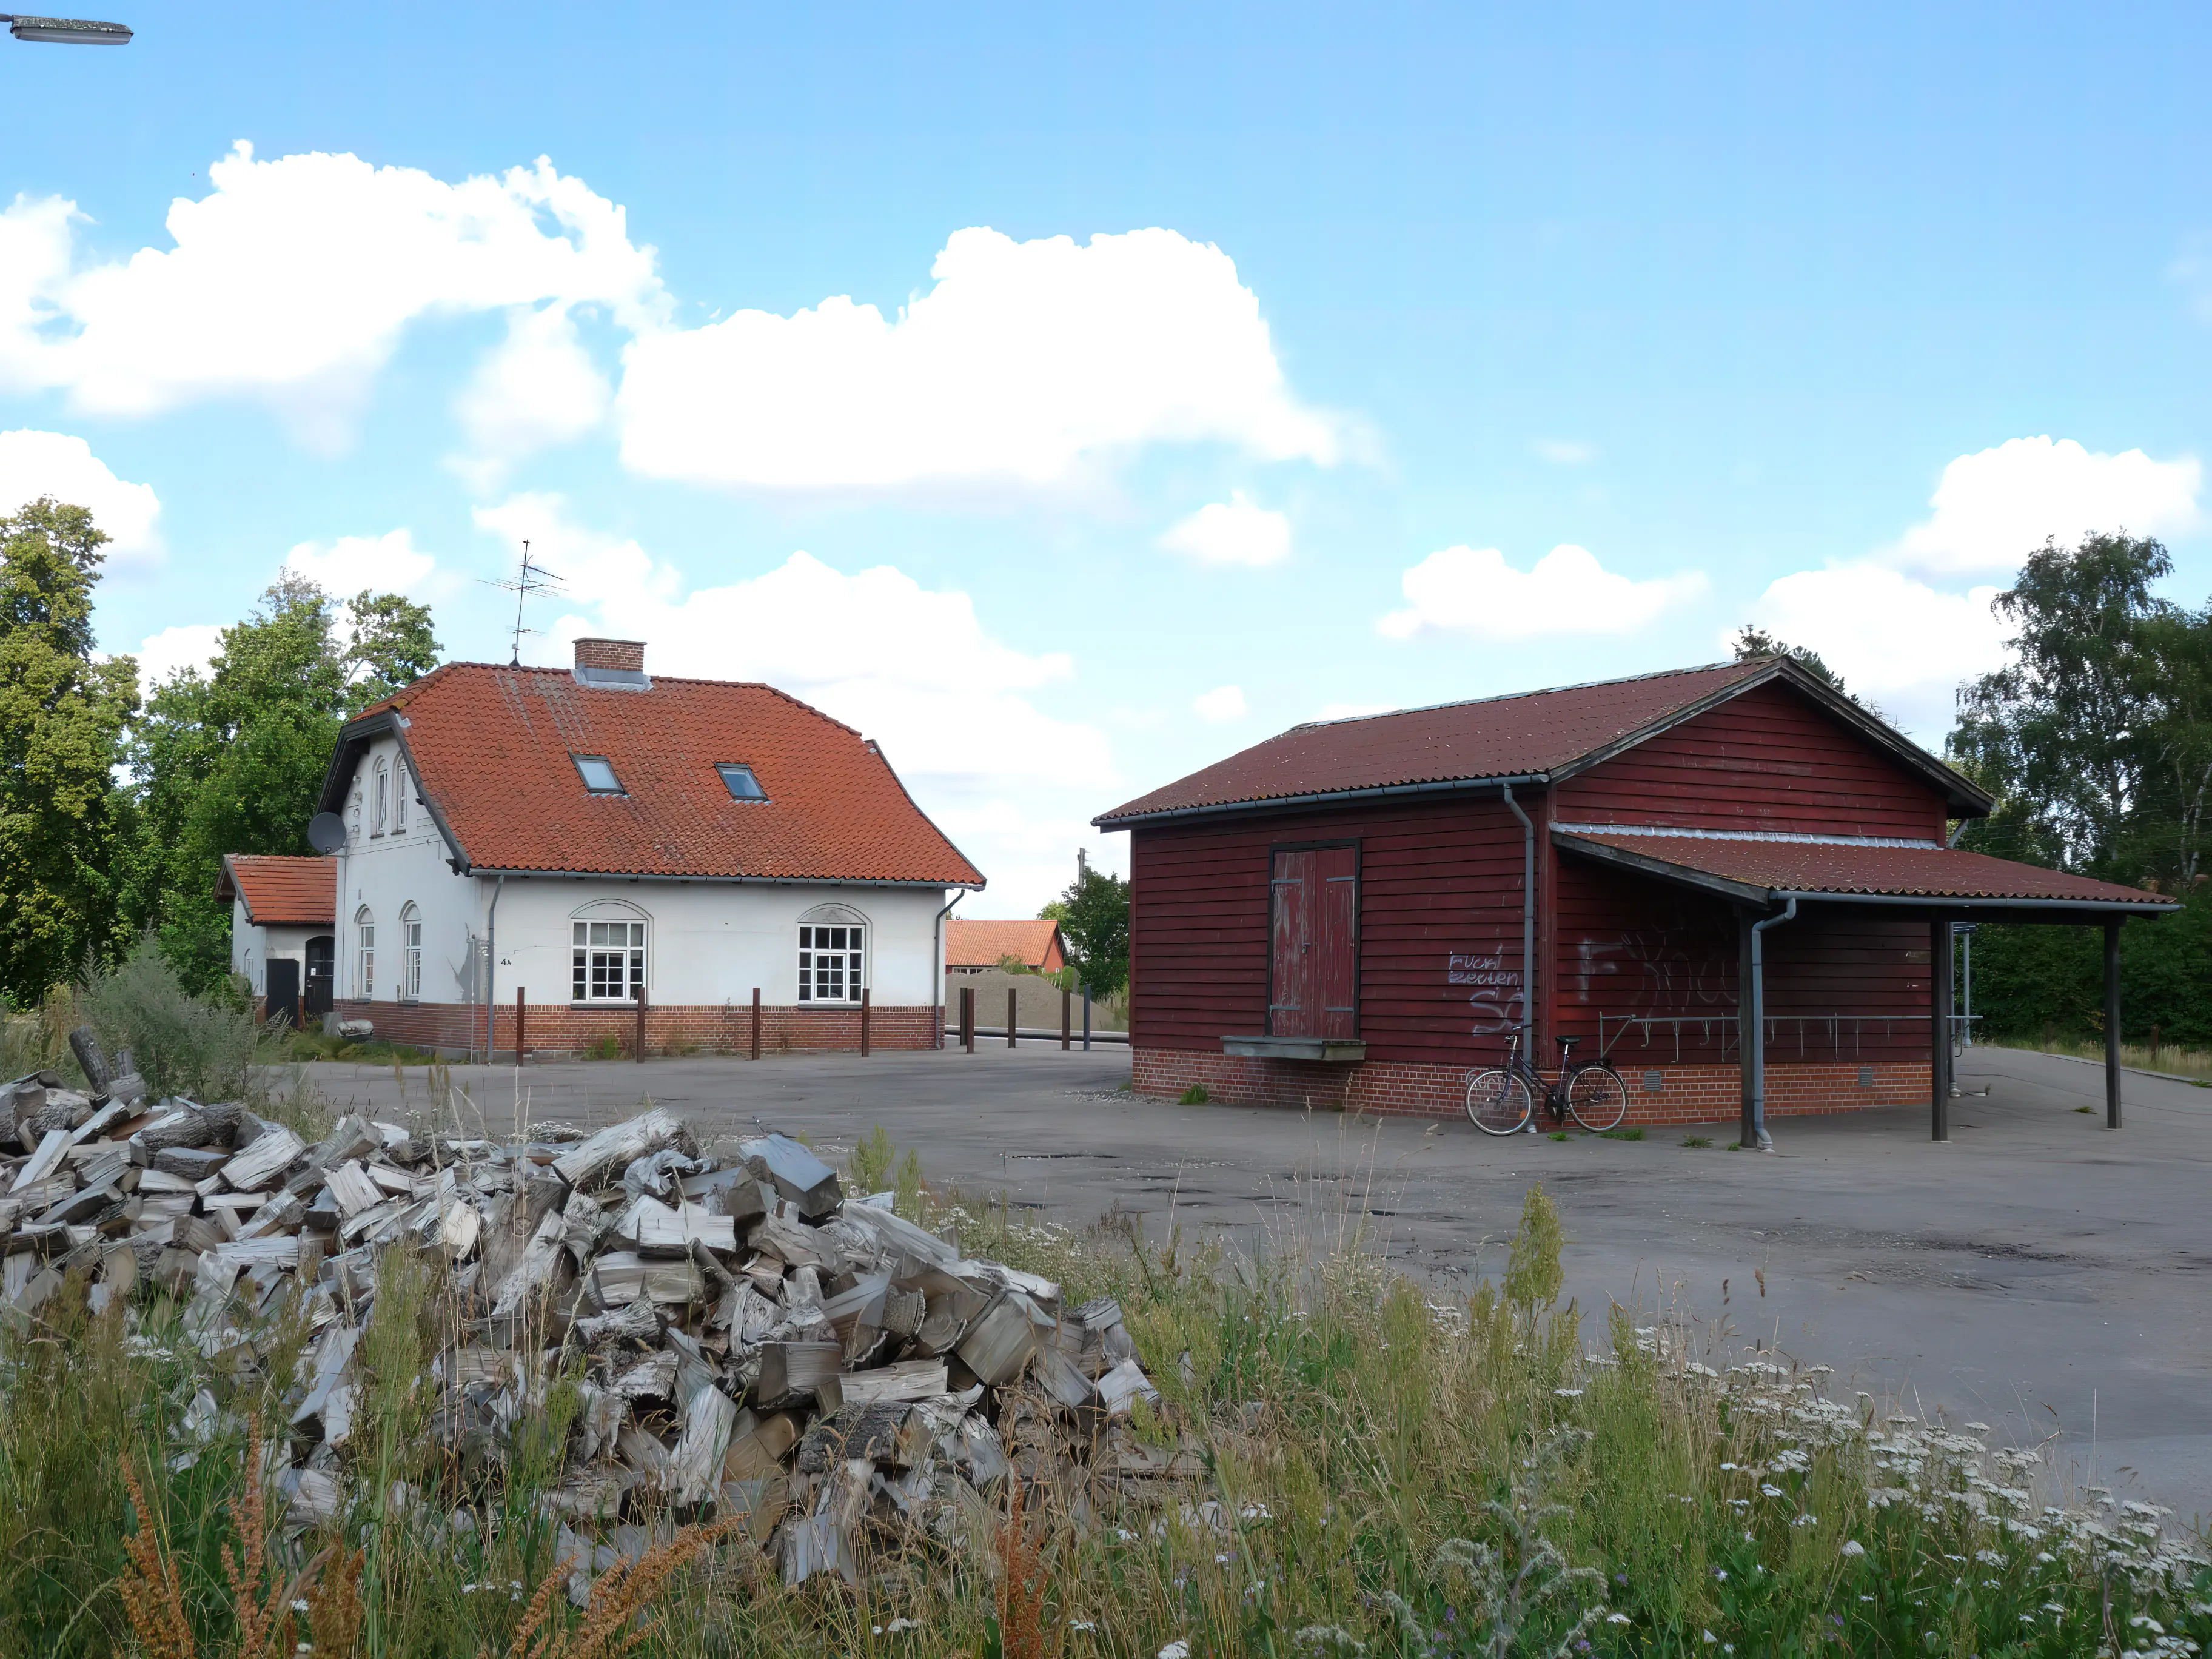 Billede af Kirke Eskilstrup Station med det klassiske varehus.